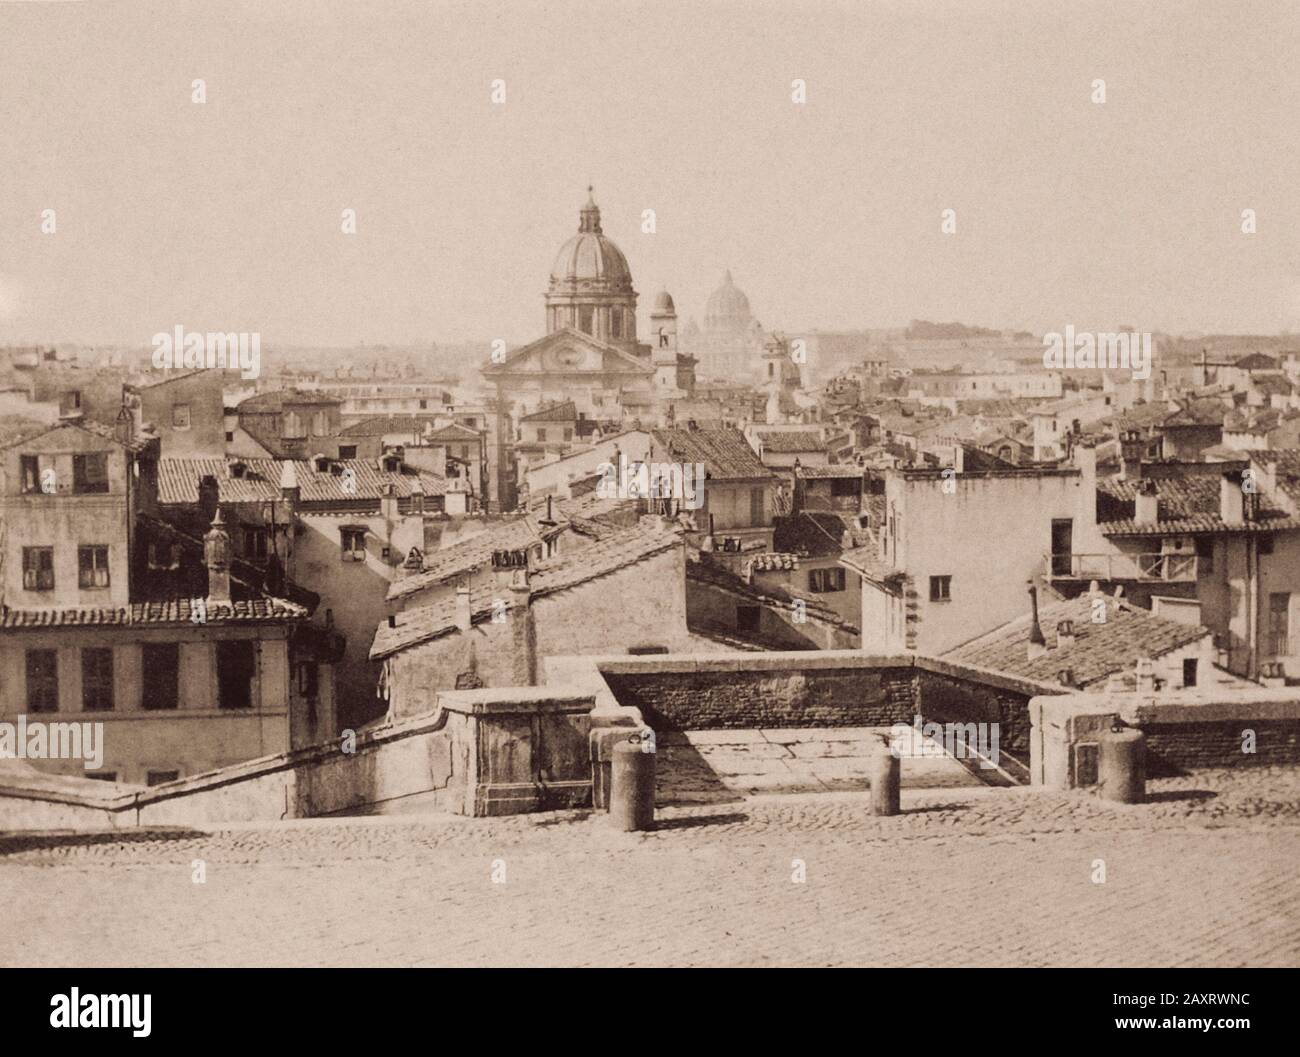 Panoramablick auf Rom. Aus dem Album "Fotografische Ansichten der wichtigsten Denkmäler Roms", den 1860-er Jahren Stockfoto